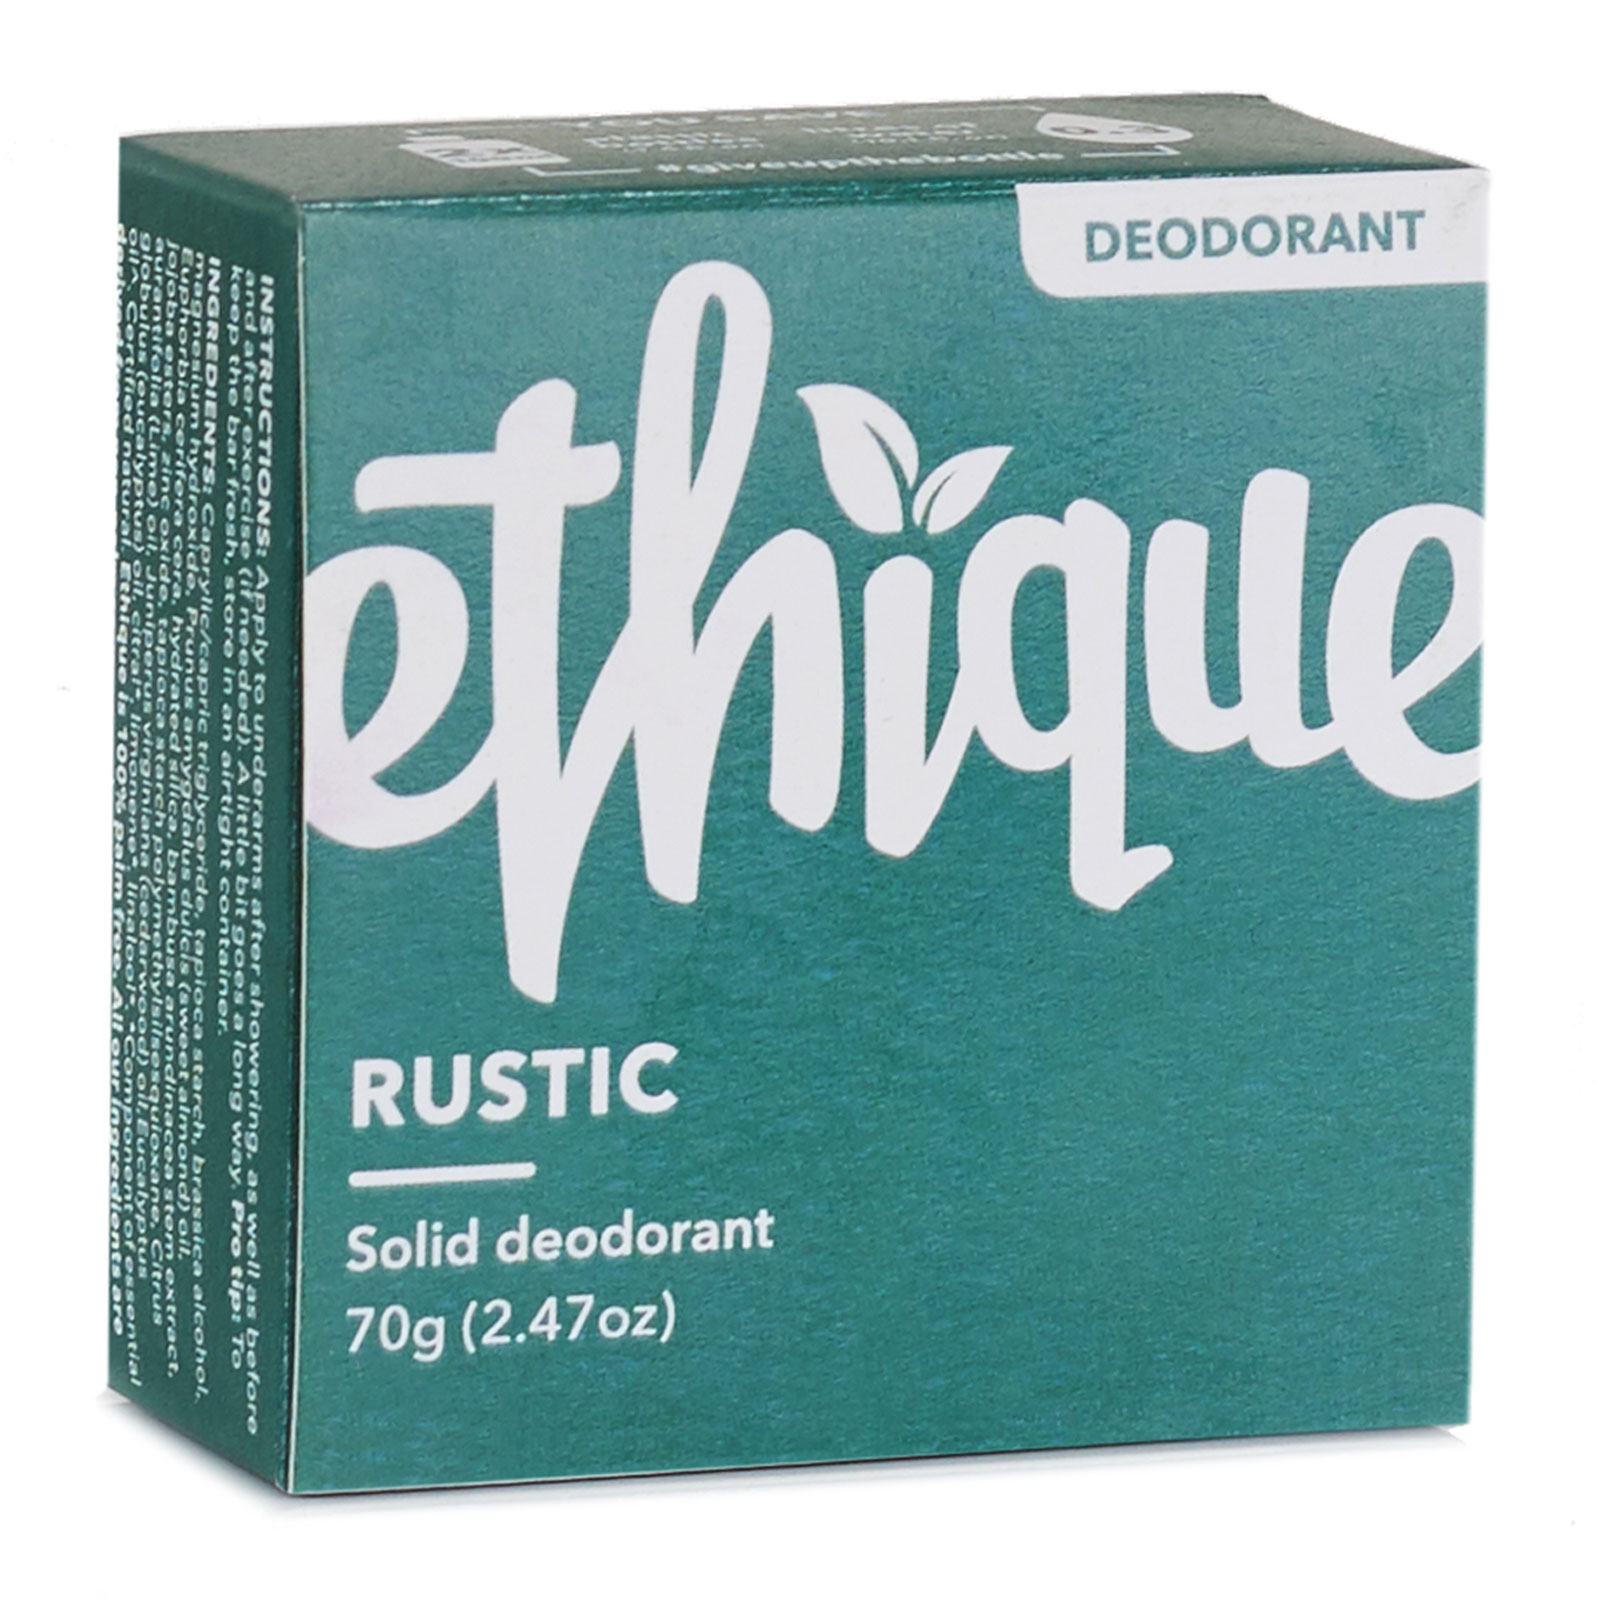 Ethique Rustic Solid Deodorant 70g